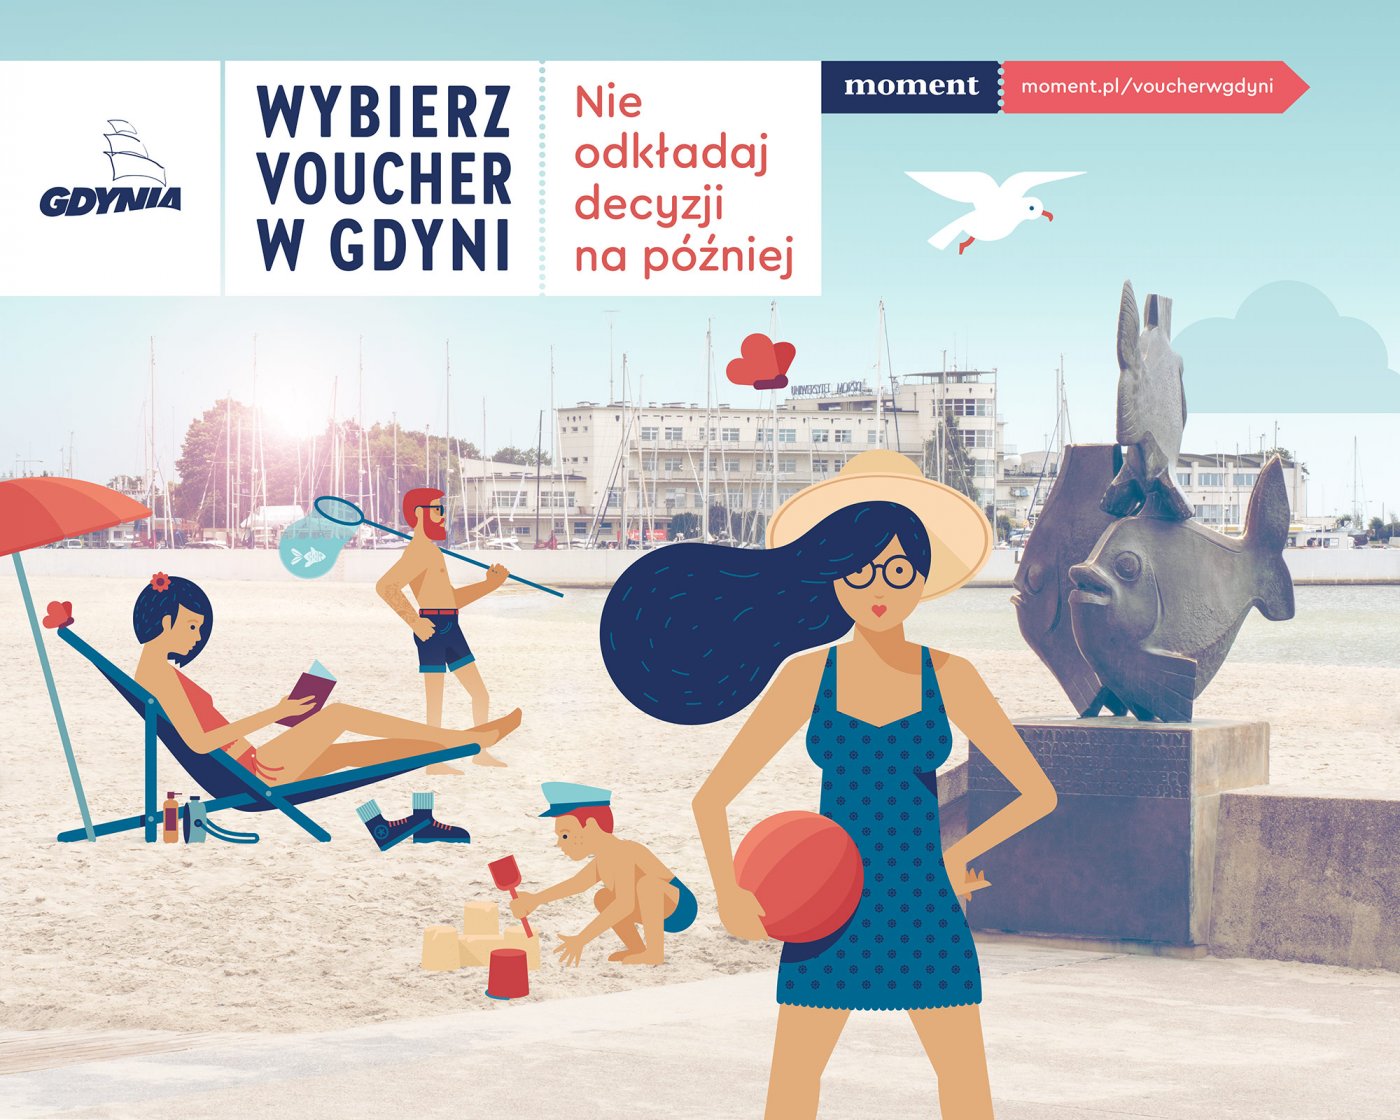 Wybierz voucher w Gdyni. Nie odkładaj decyzji na później